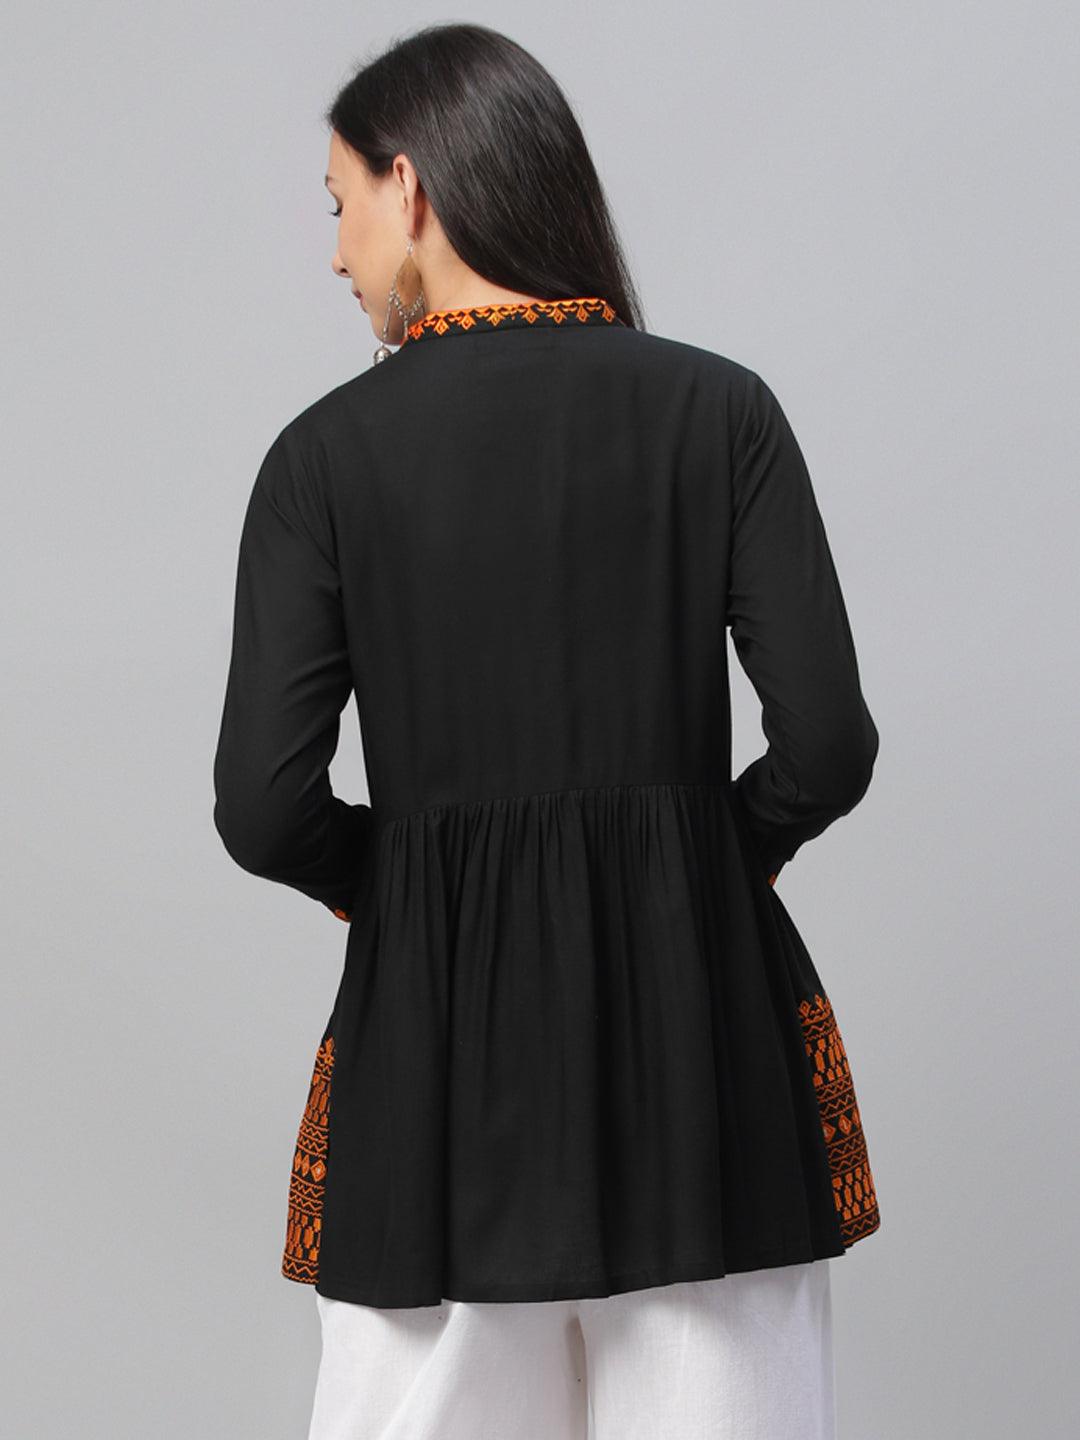 Black Embroidered Rayon Kurti - Libas